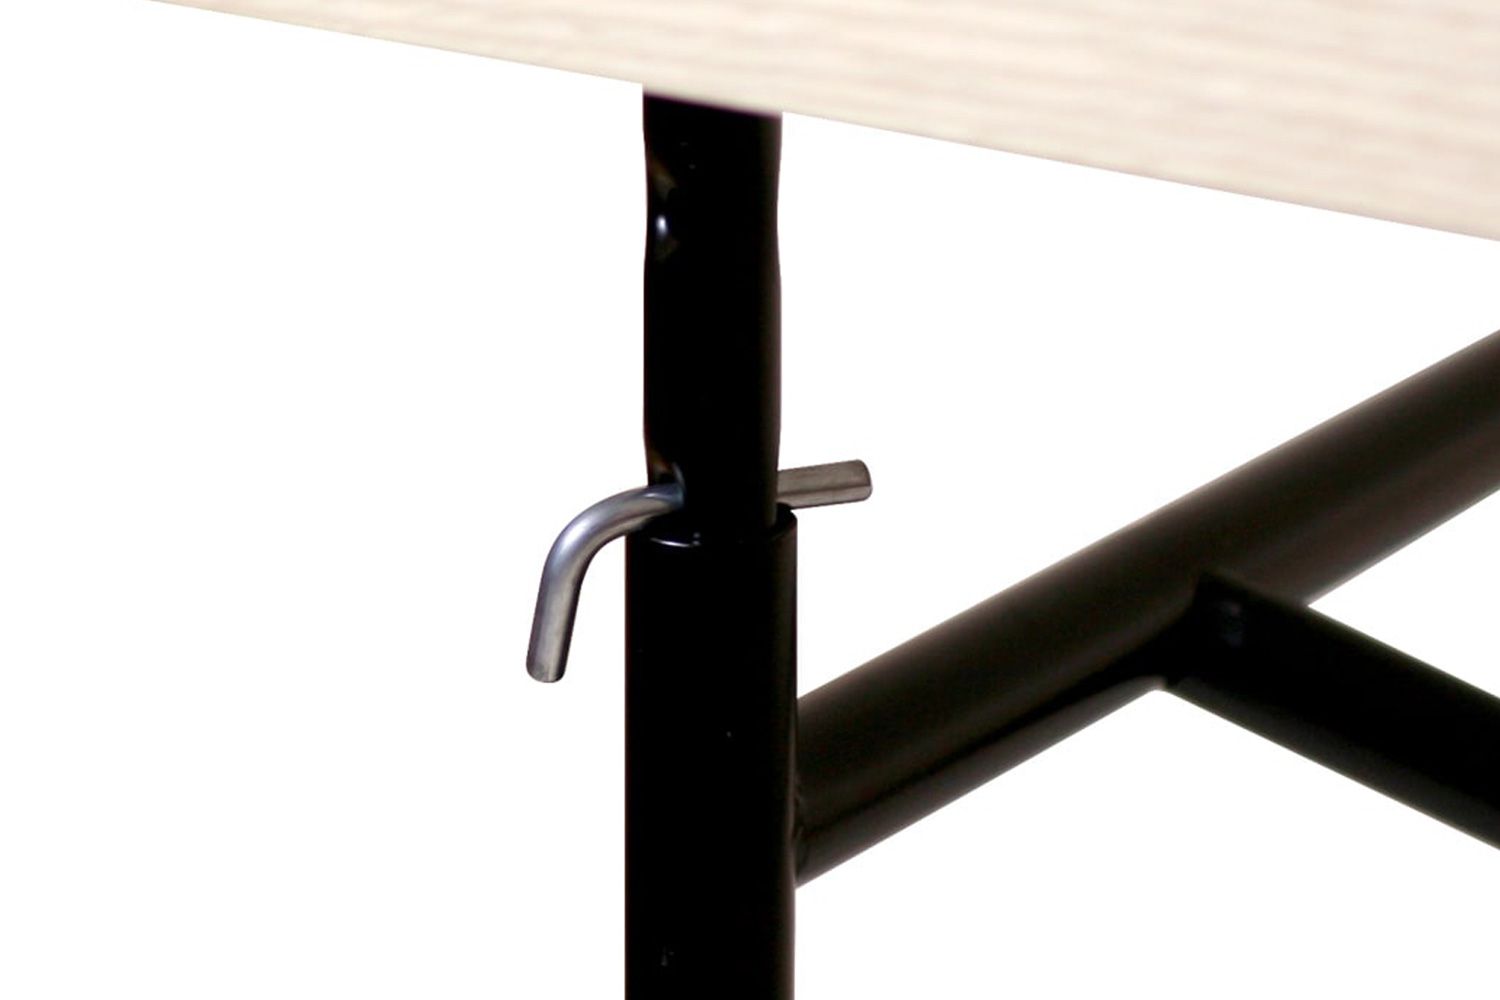 リチャード ランパート アイアーマン テーブル 2 リノリウム ブラック 可動パイプを上下させ、L字金具を差し込むだけで、天板の高さを変更できる昇降テーブルです。